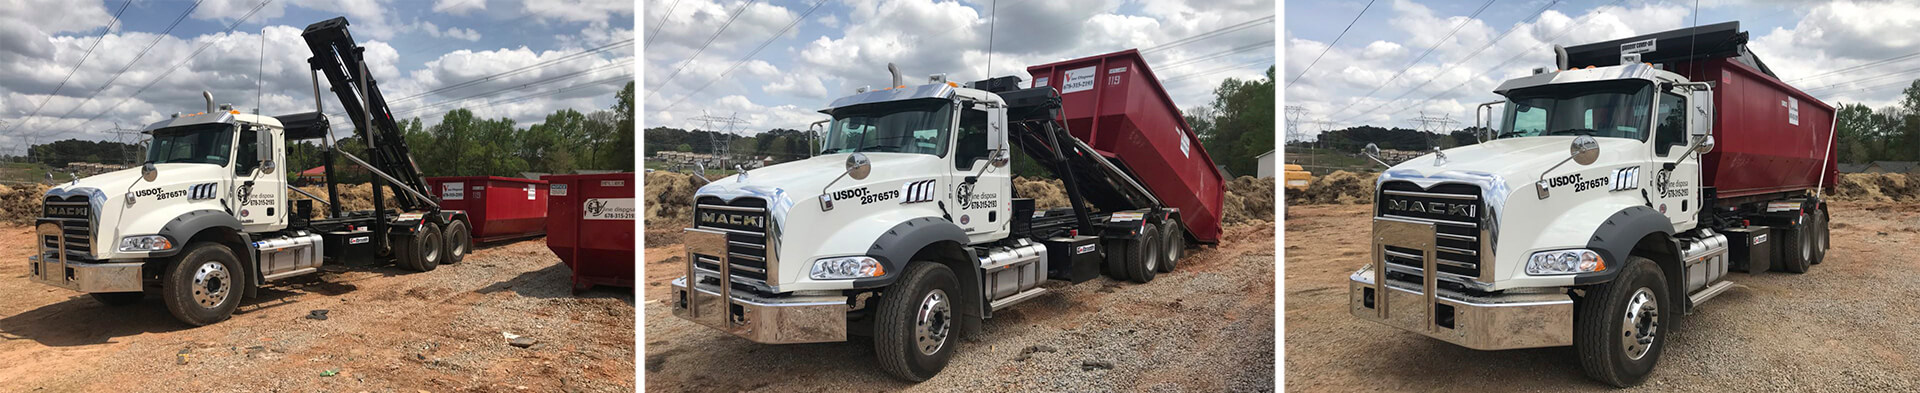 Roll-Off Dumpster Rental in Gwinnett County